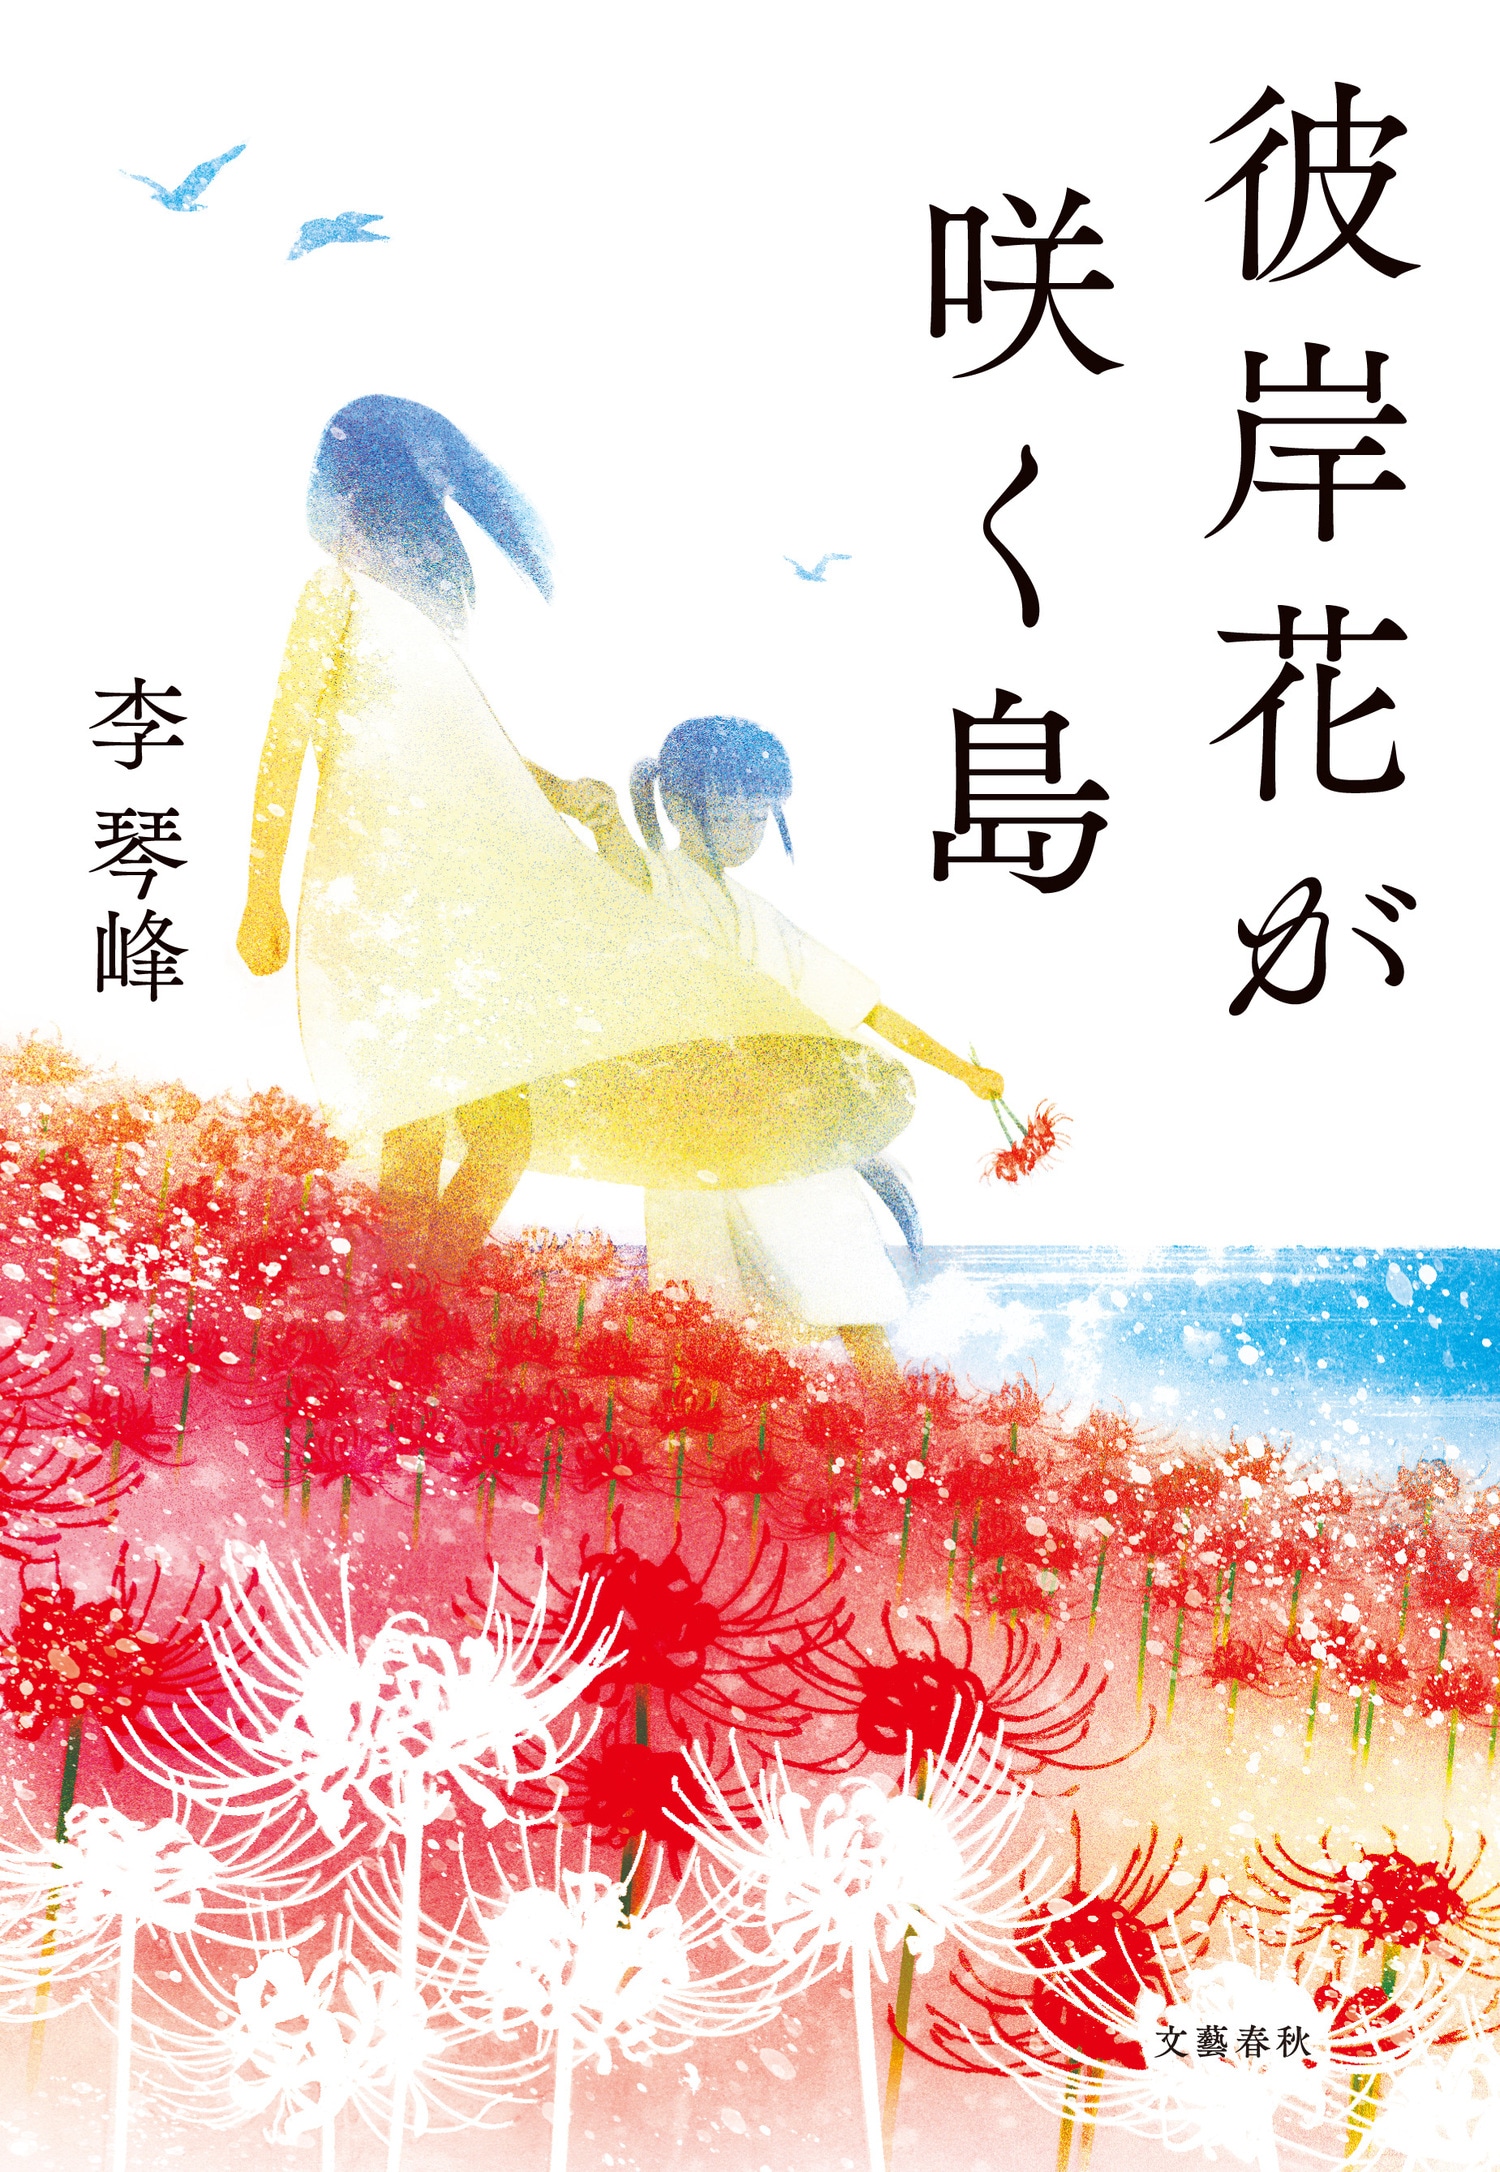 【速報】第165回芥川賞に石沢麻依さんの「貝に続く場所にて」と李琴峰さんの「彼岸花（ひがんばな）が咲く島」が選ばれました。